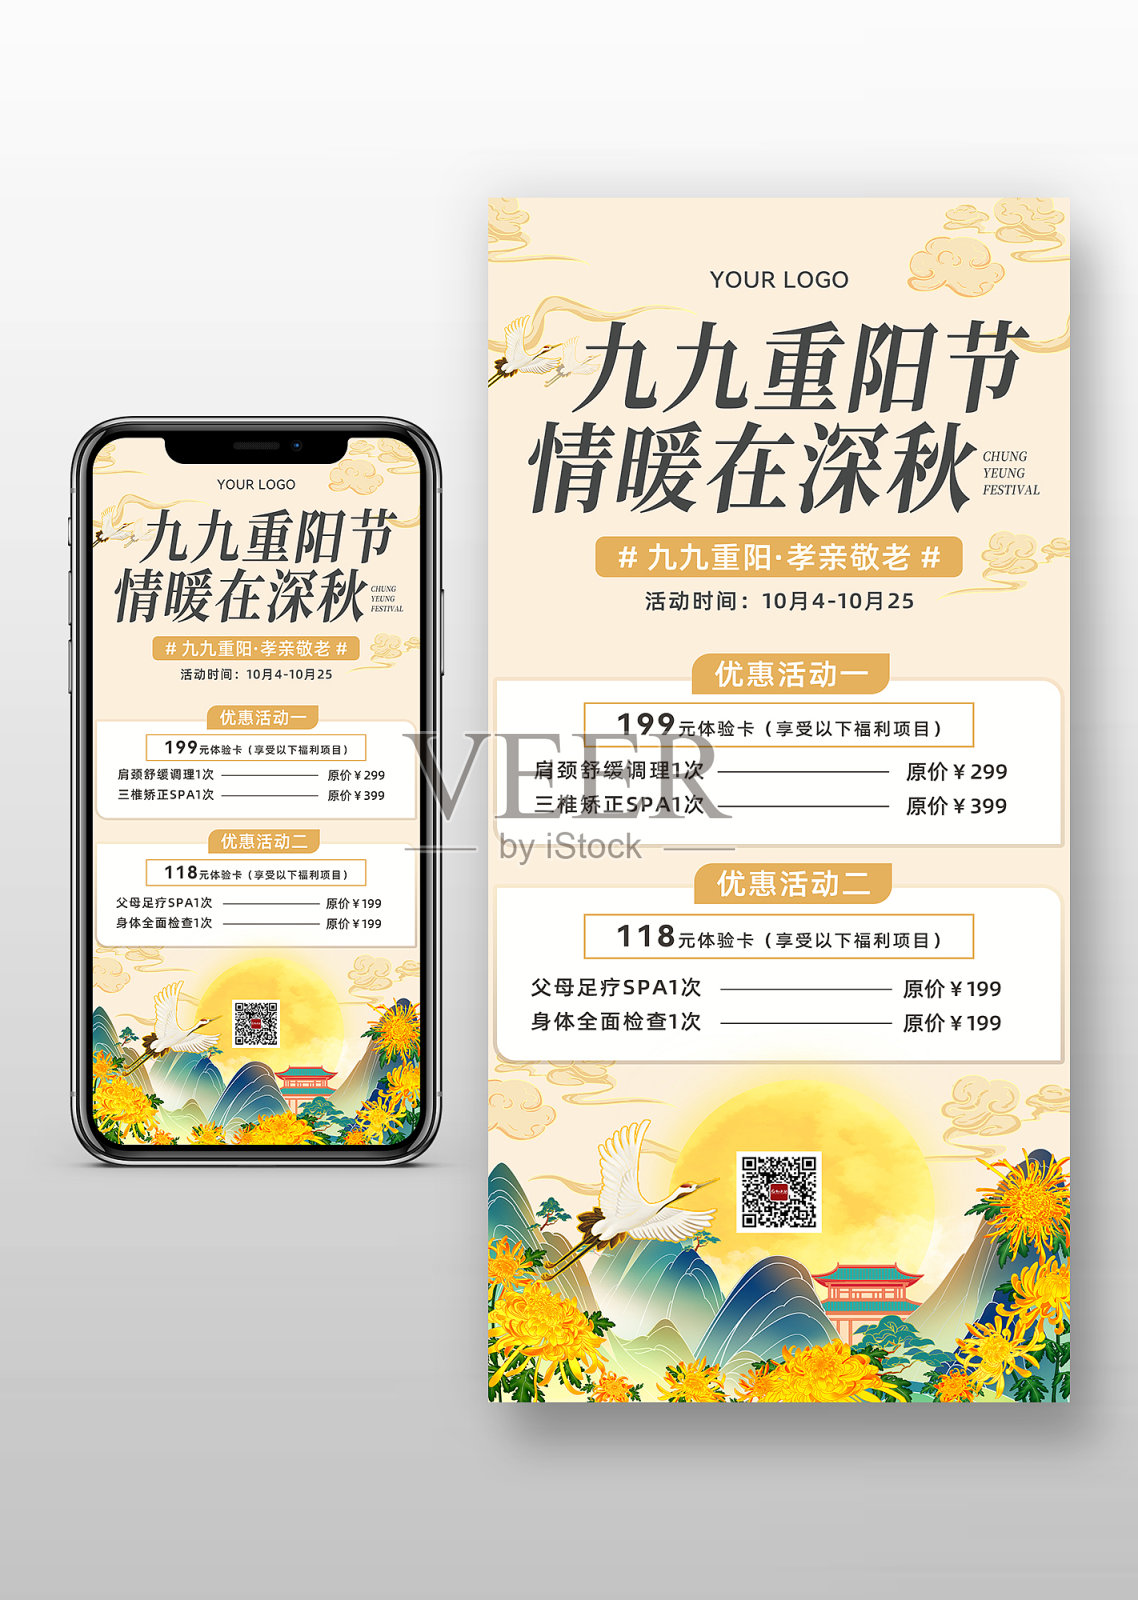 九九重阳节社区孝亲敬老活动宣传海报设计模板素材